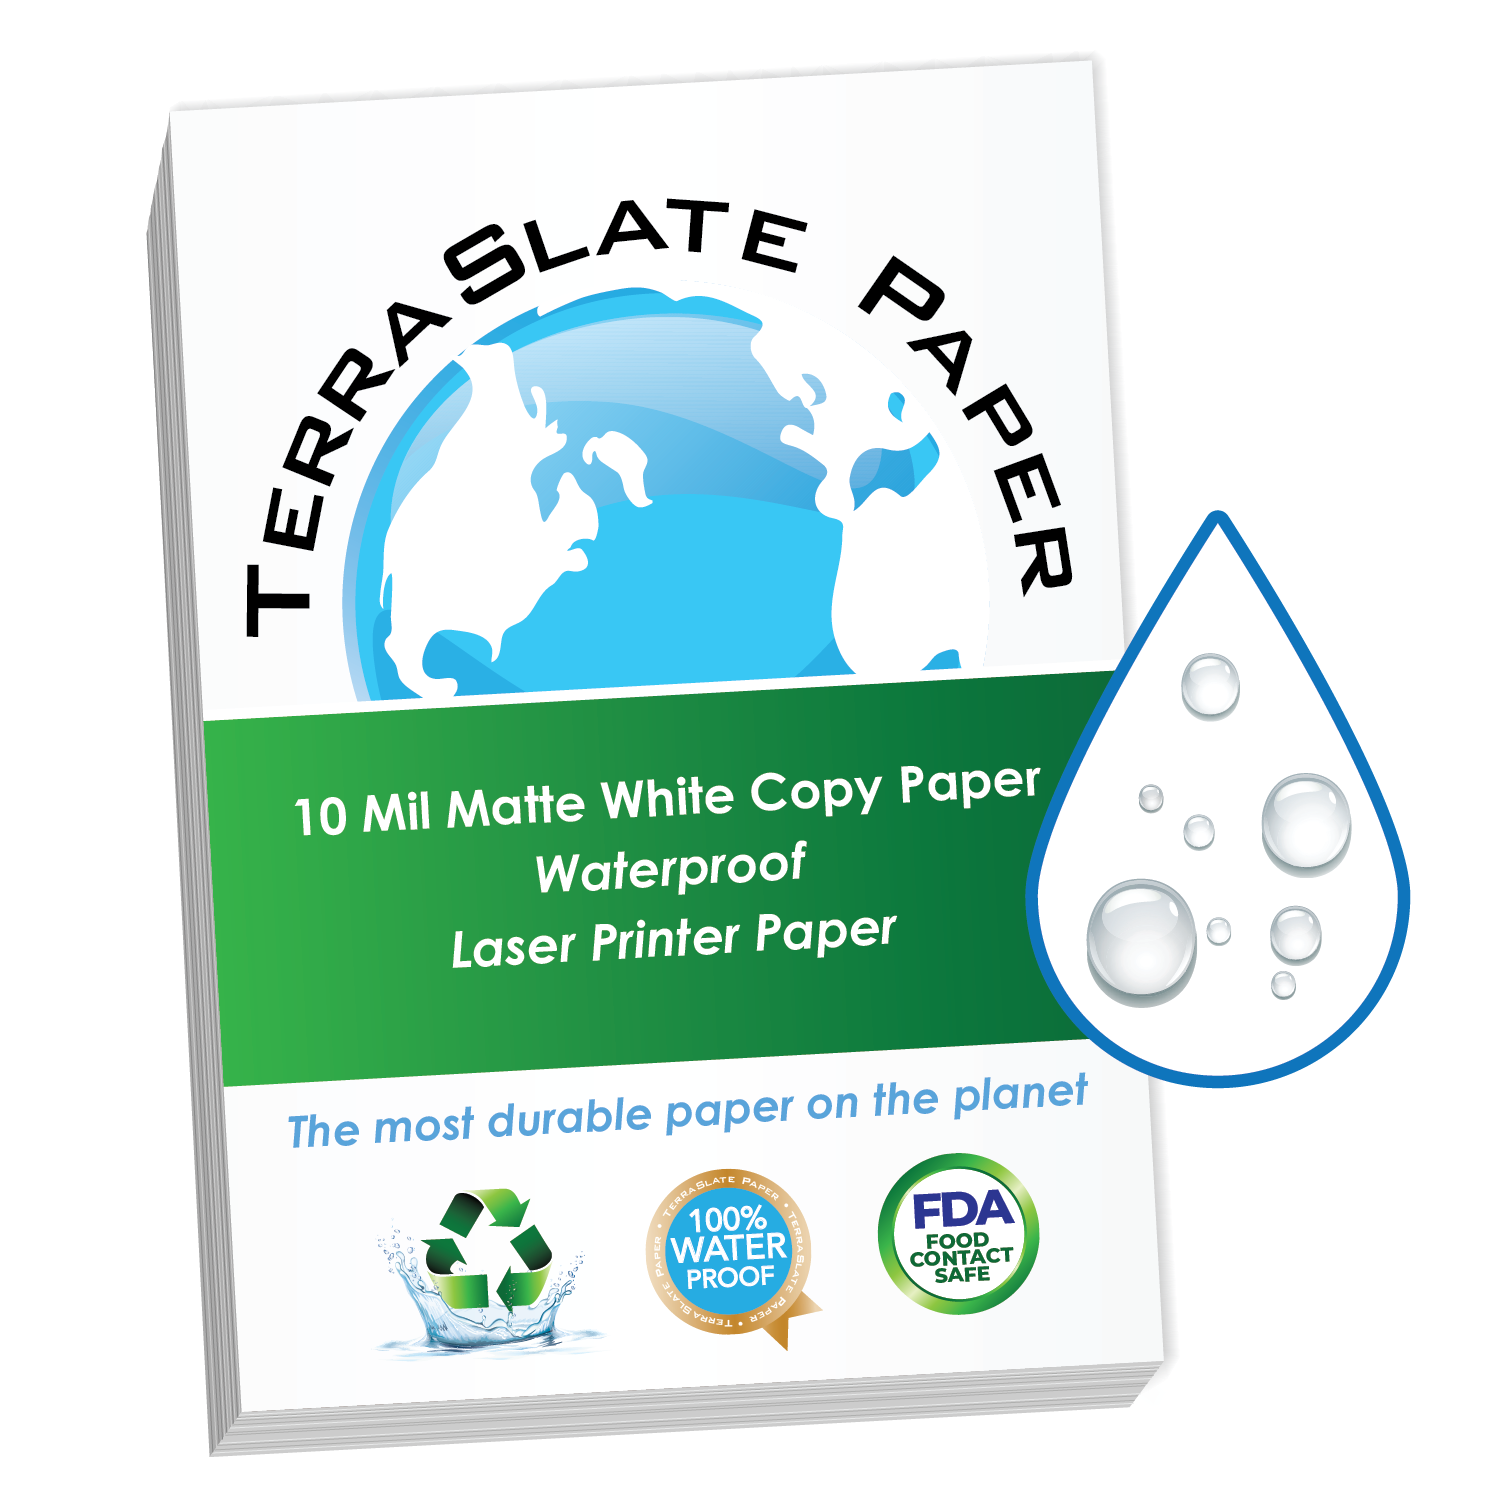 25 A4 Sheets Toughprint Waterproof Paper